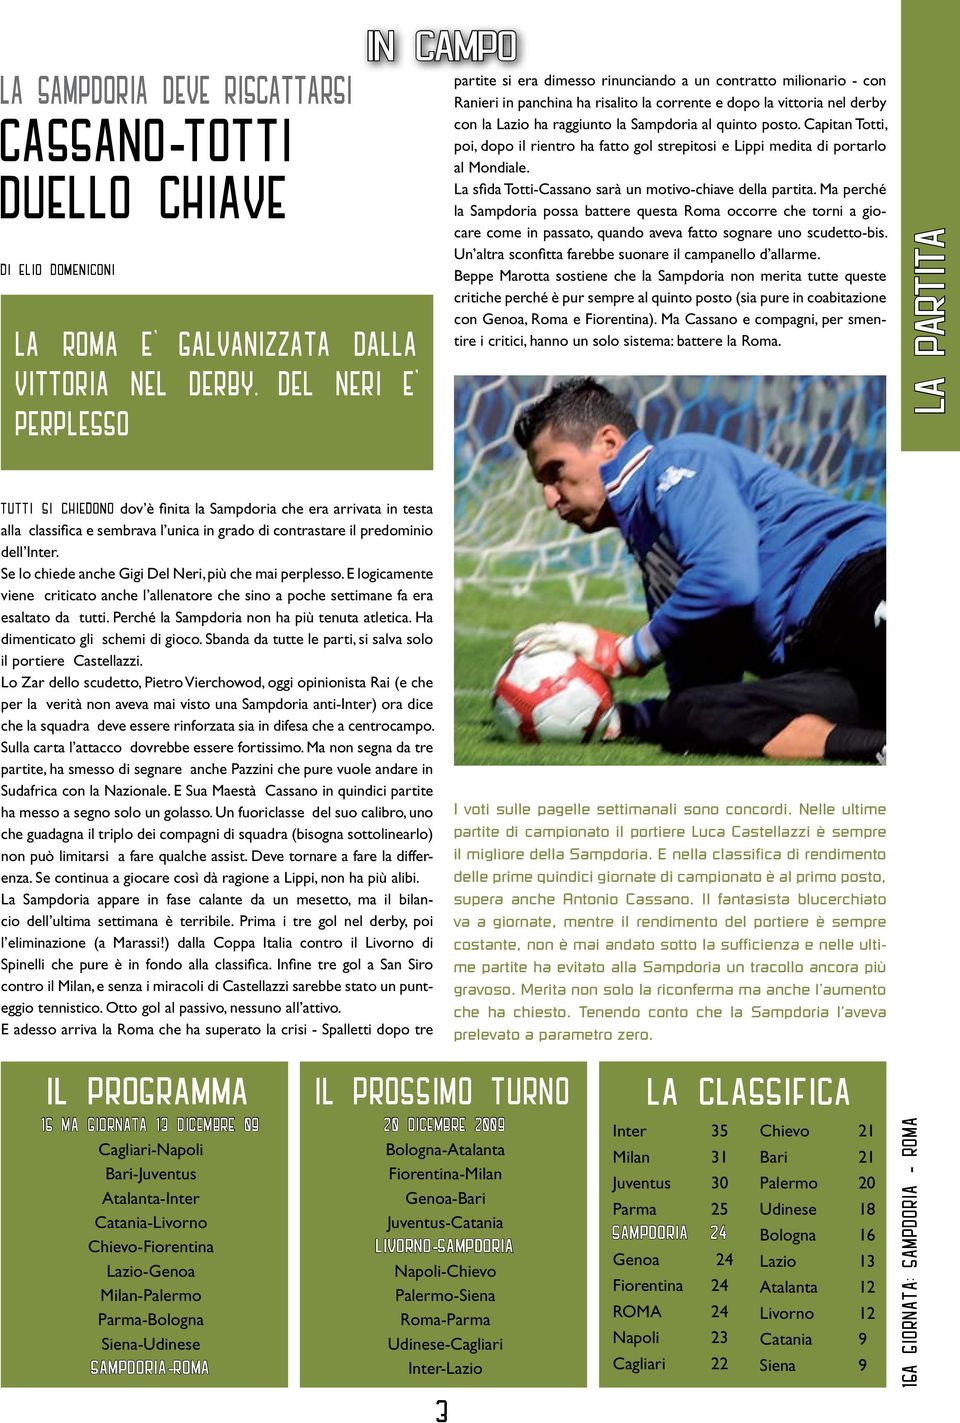 al quinto posto. Capitan Totti, poi, dopo il rientro ha fatto gol strepitosi e Lippi medita di portarlo al Mondiale. La sfida Totti-Cassano sarà un motivo-chiave della partita.